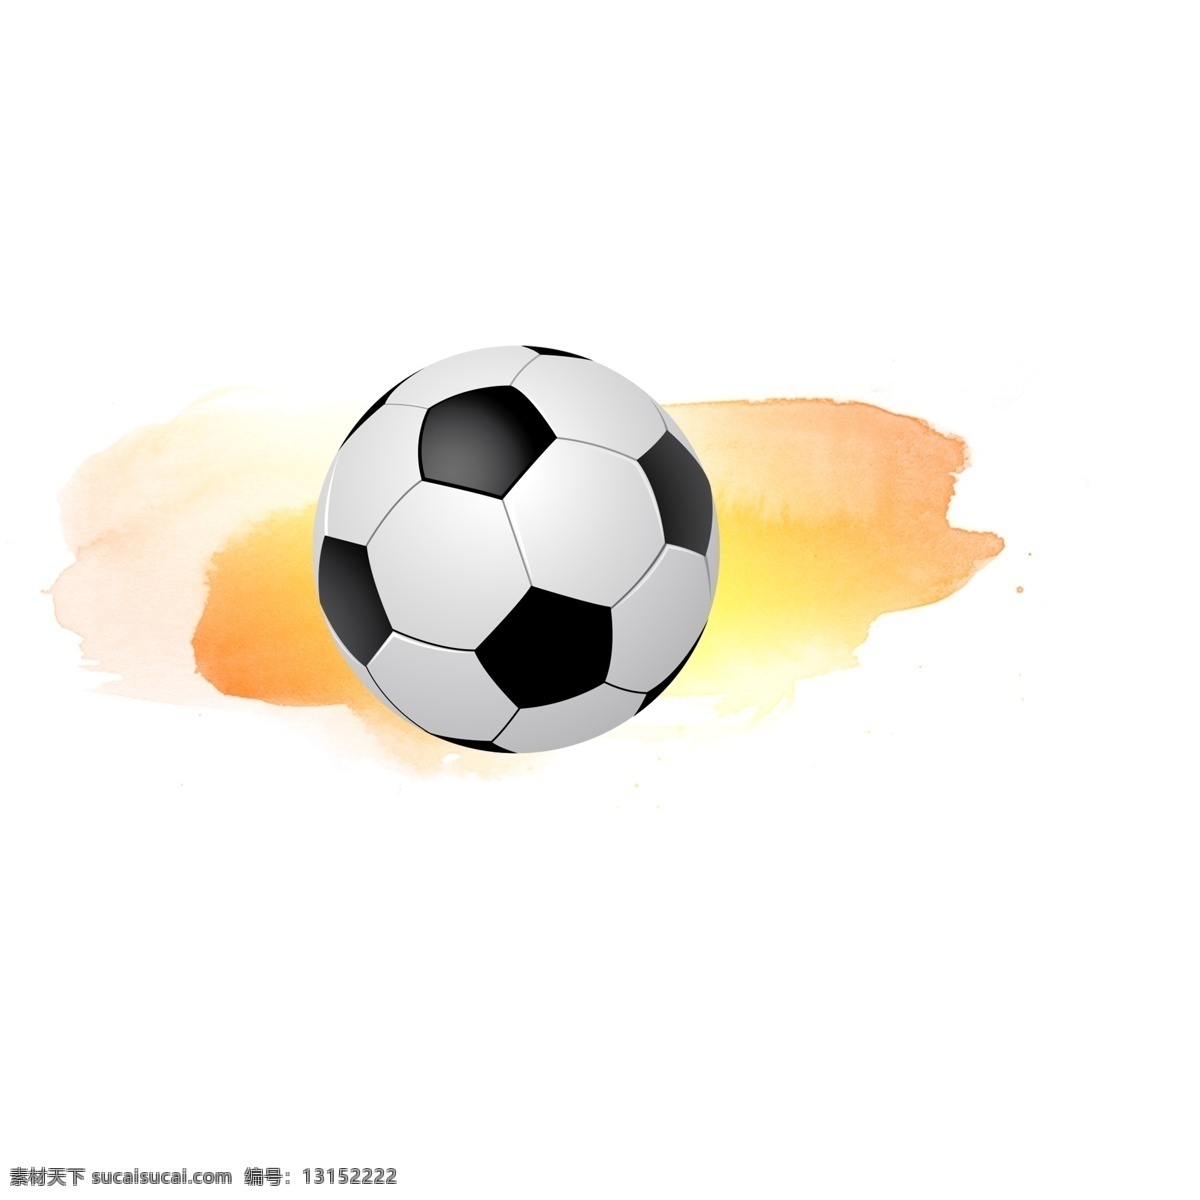 彩色 水彩 足球 元素 彩色水彩 黑白足球 体育运动 2018 世界杯 卡通足球 足球赛 青少年足球 平面装饰 动感足球